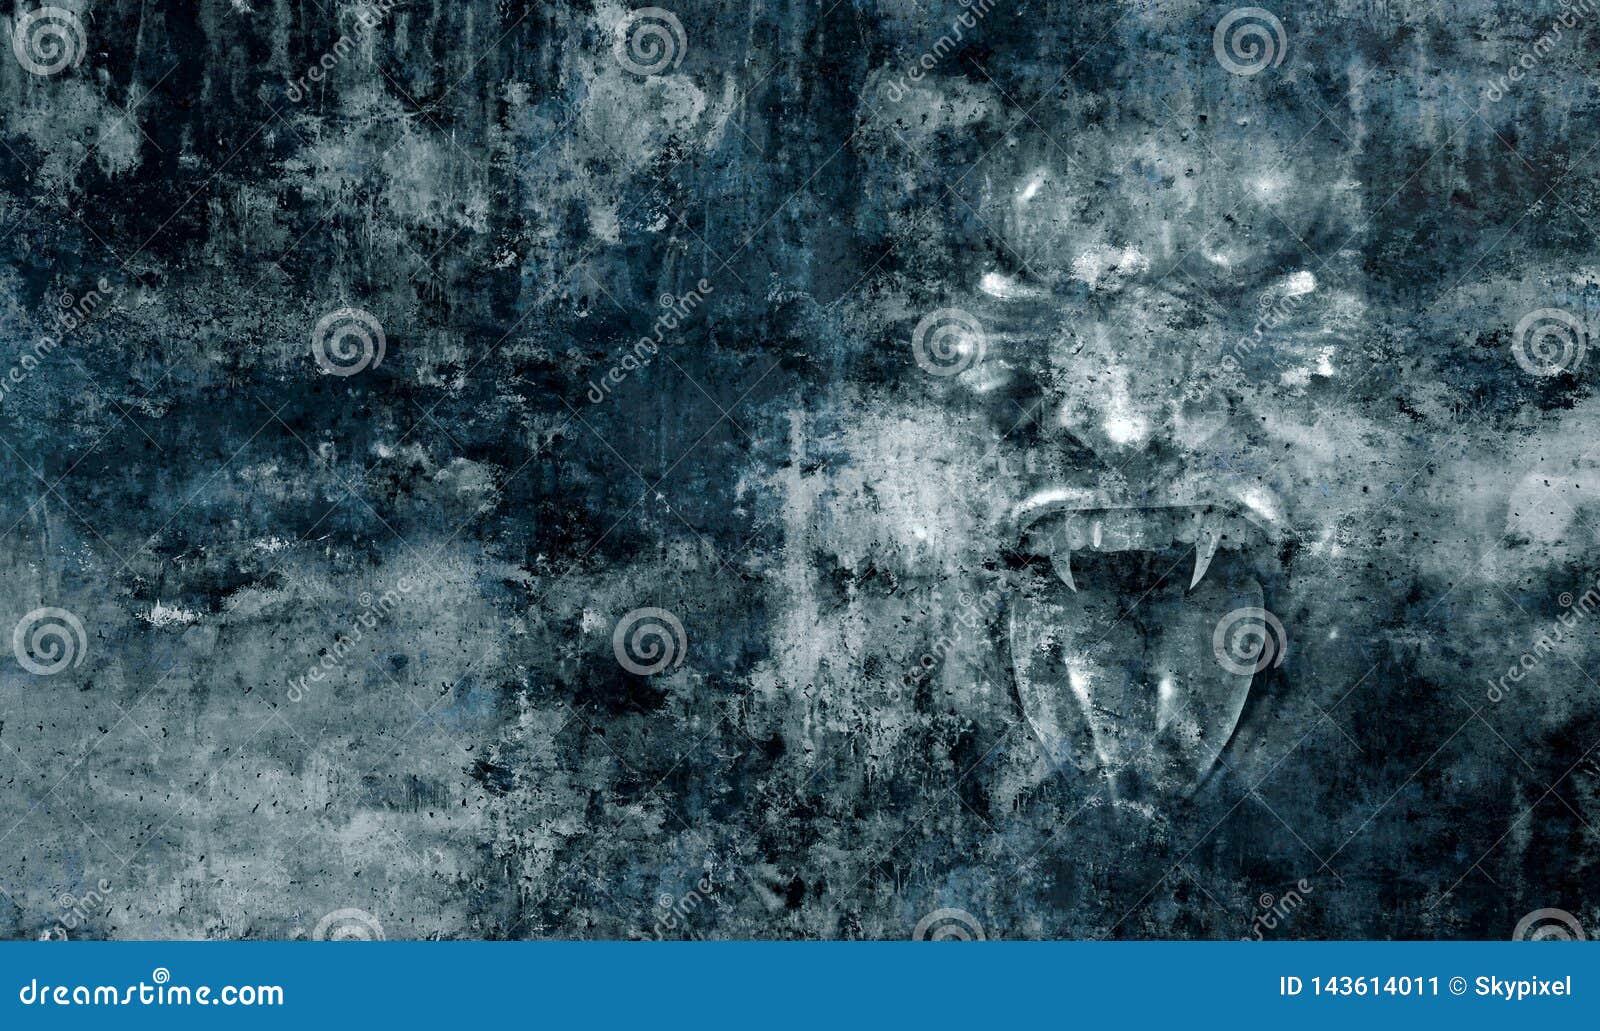 horror monster  face background